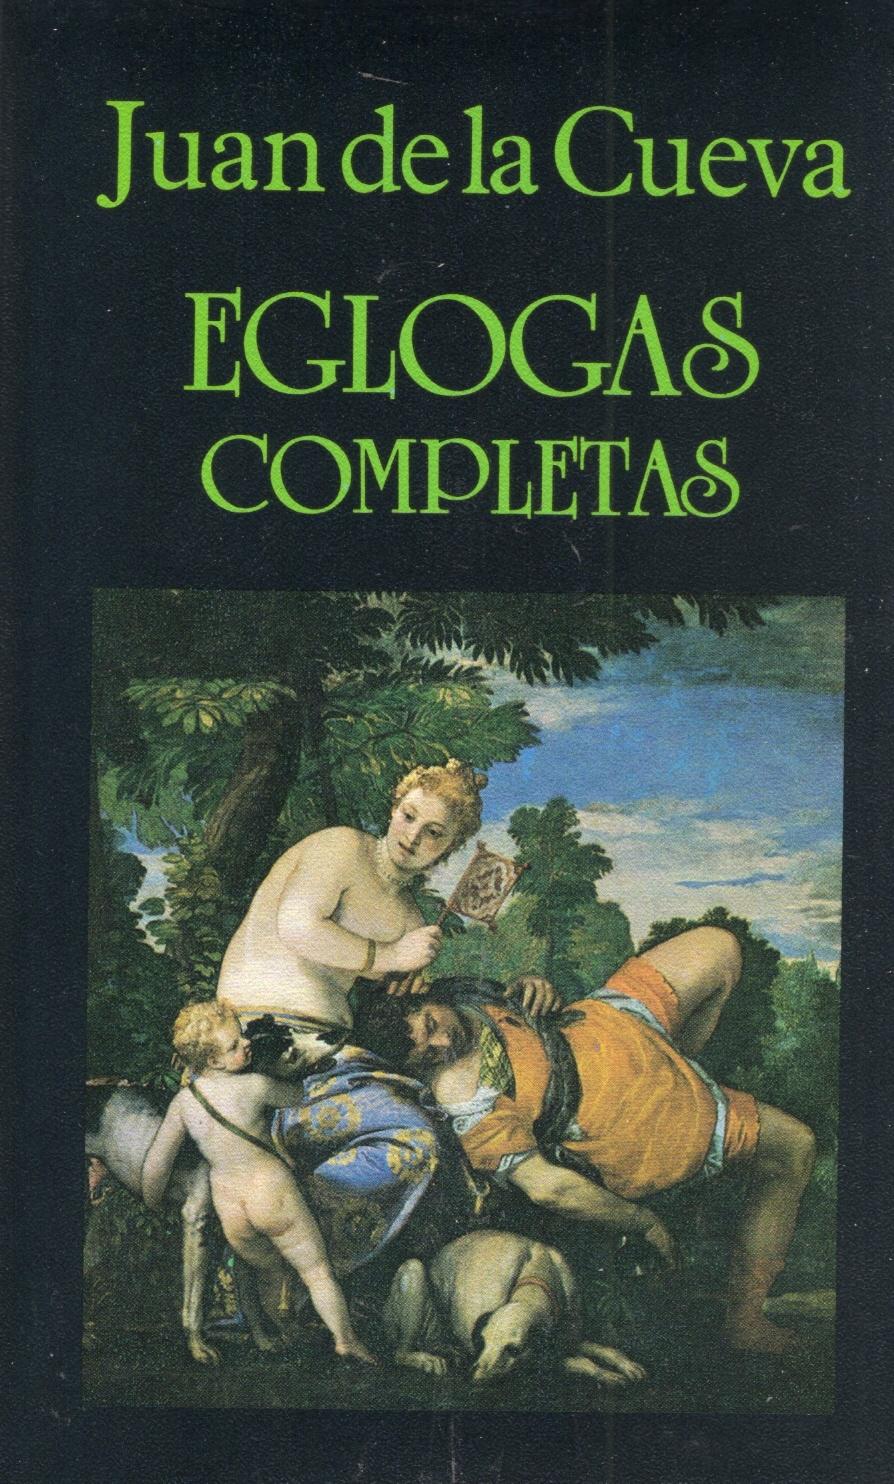 Eglogas completas  "(Juan de la Cueva)"